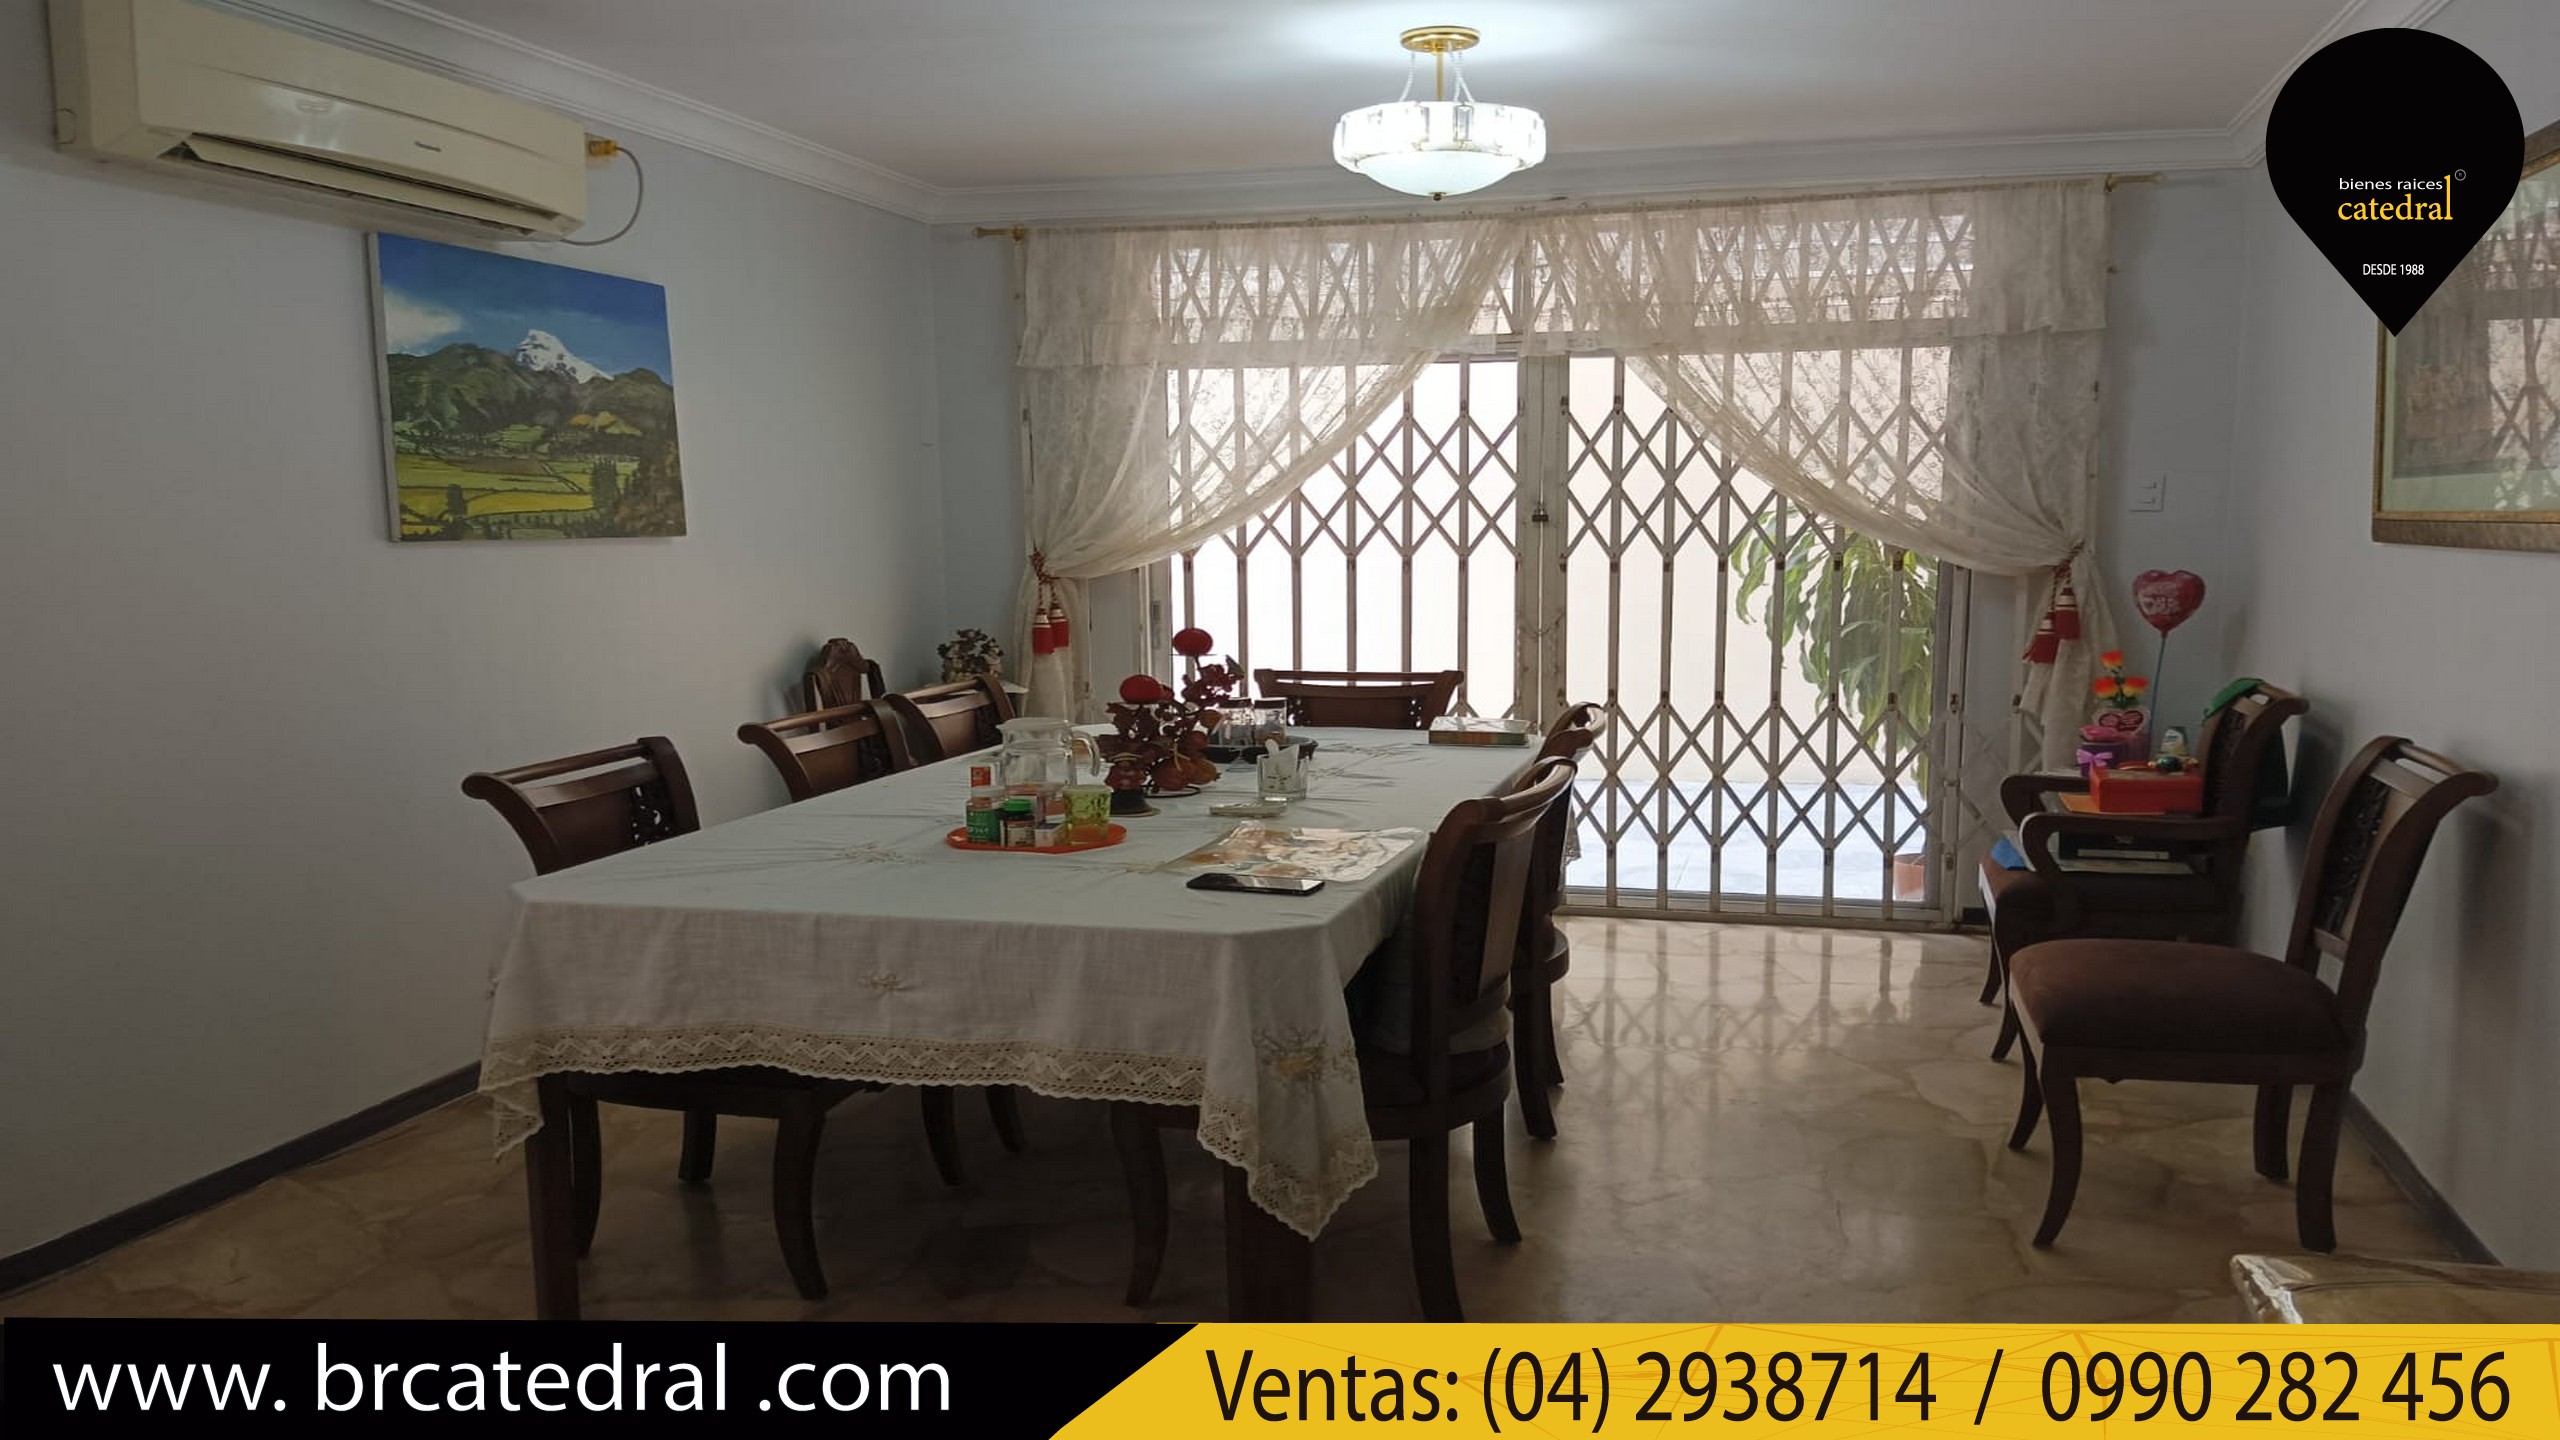 Villa Casa de Venta en Guayaquil Ecuador sector Garzota - Sector Coop. Jep